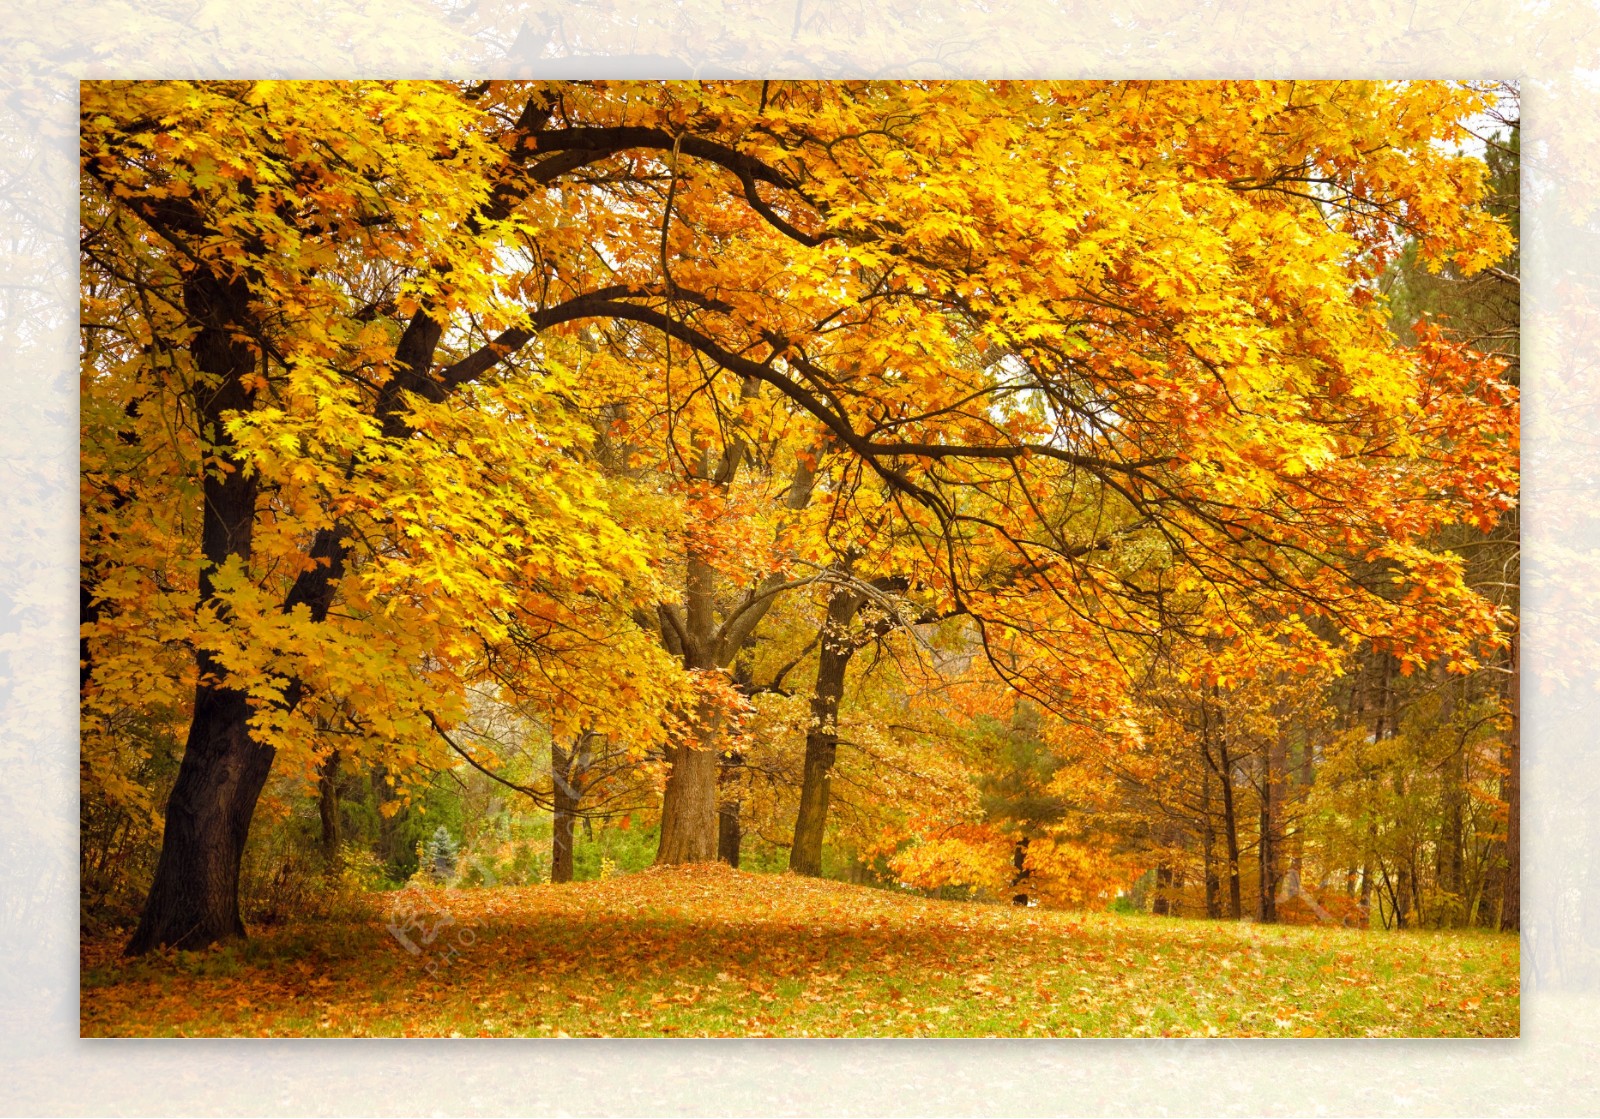 超清秋季森林风景图片